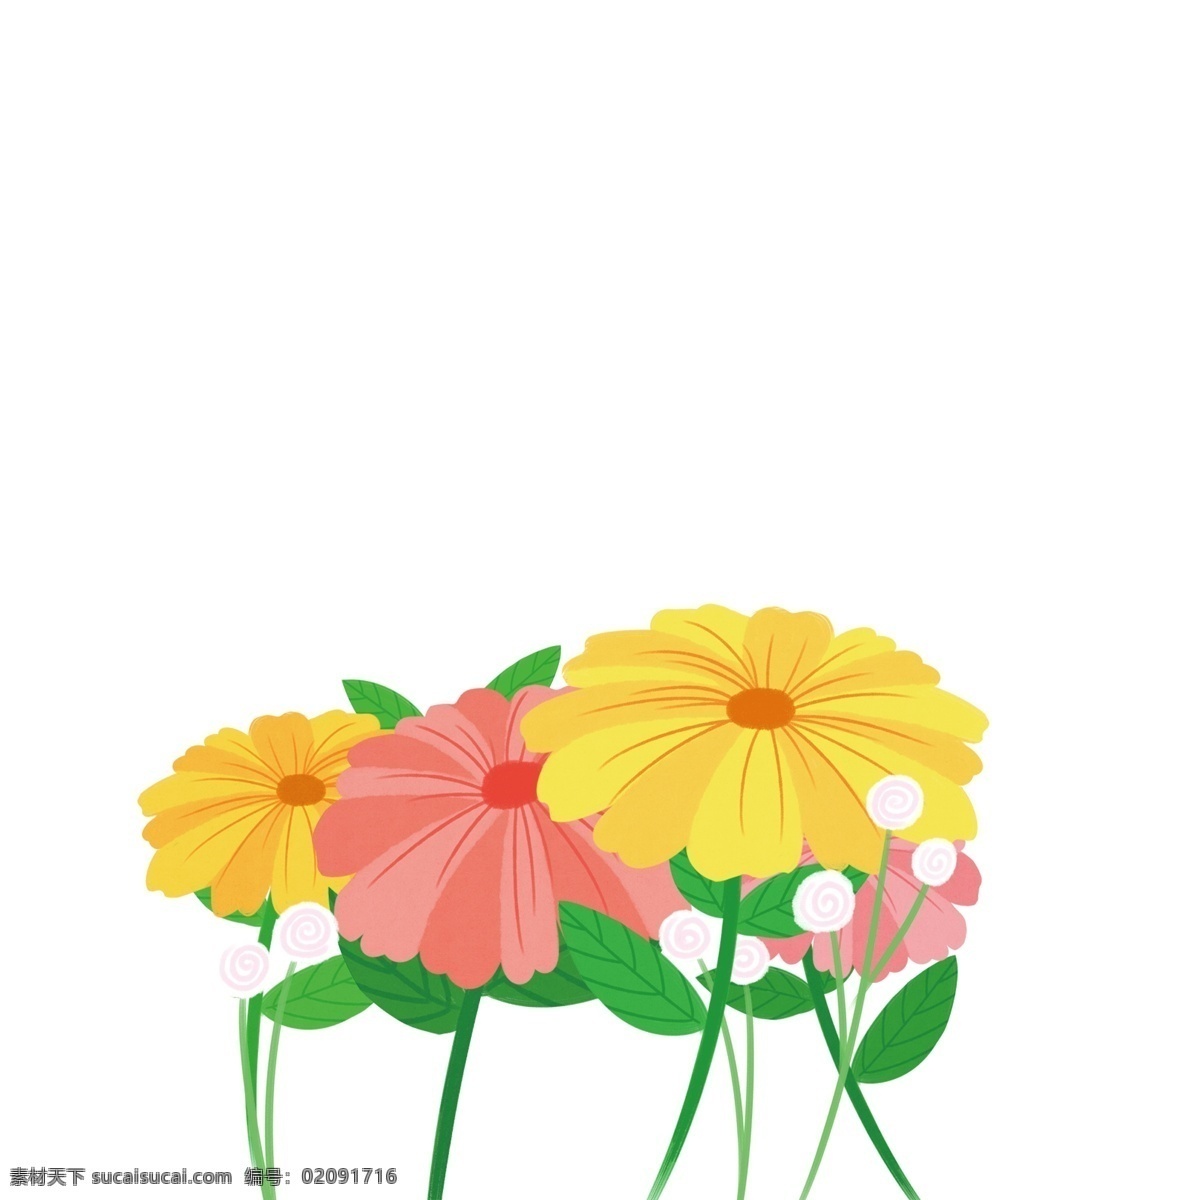 夏季 花朵 图案 元素 花丛 卡通花朵 花卉 设计元素 手绘 创意元素 手绘元素 psd元素